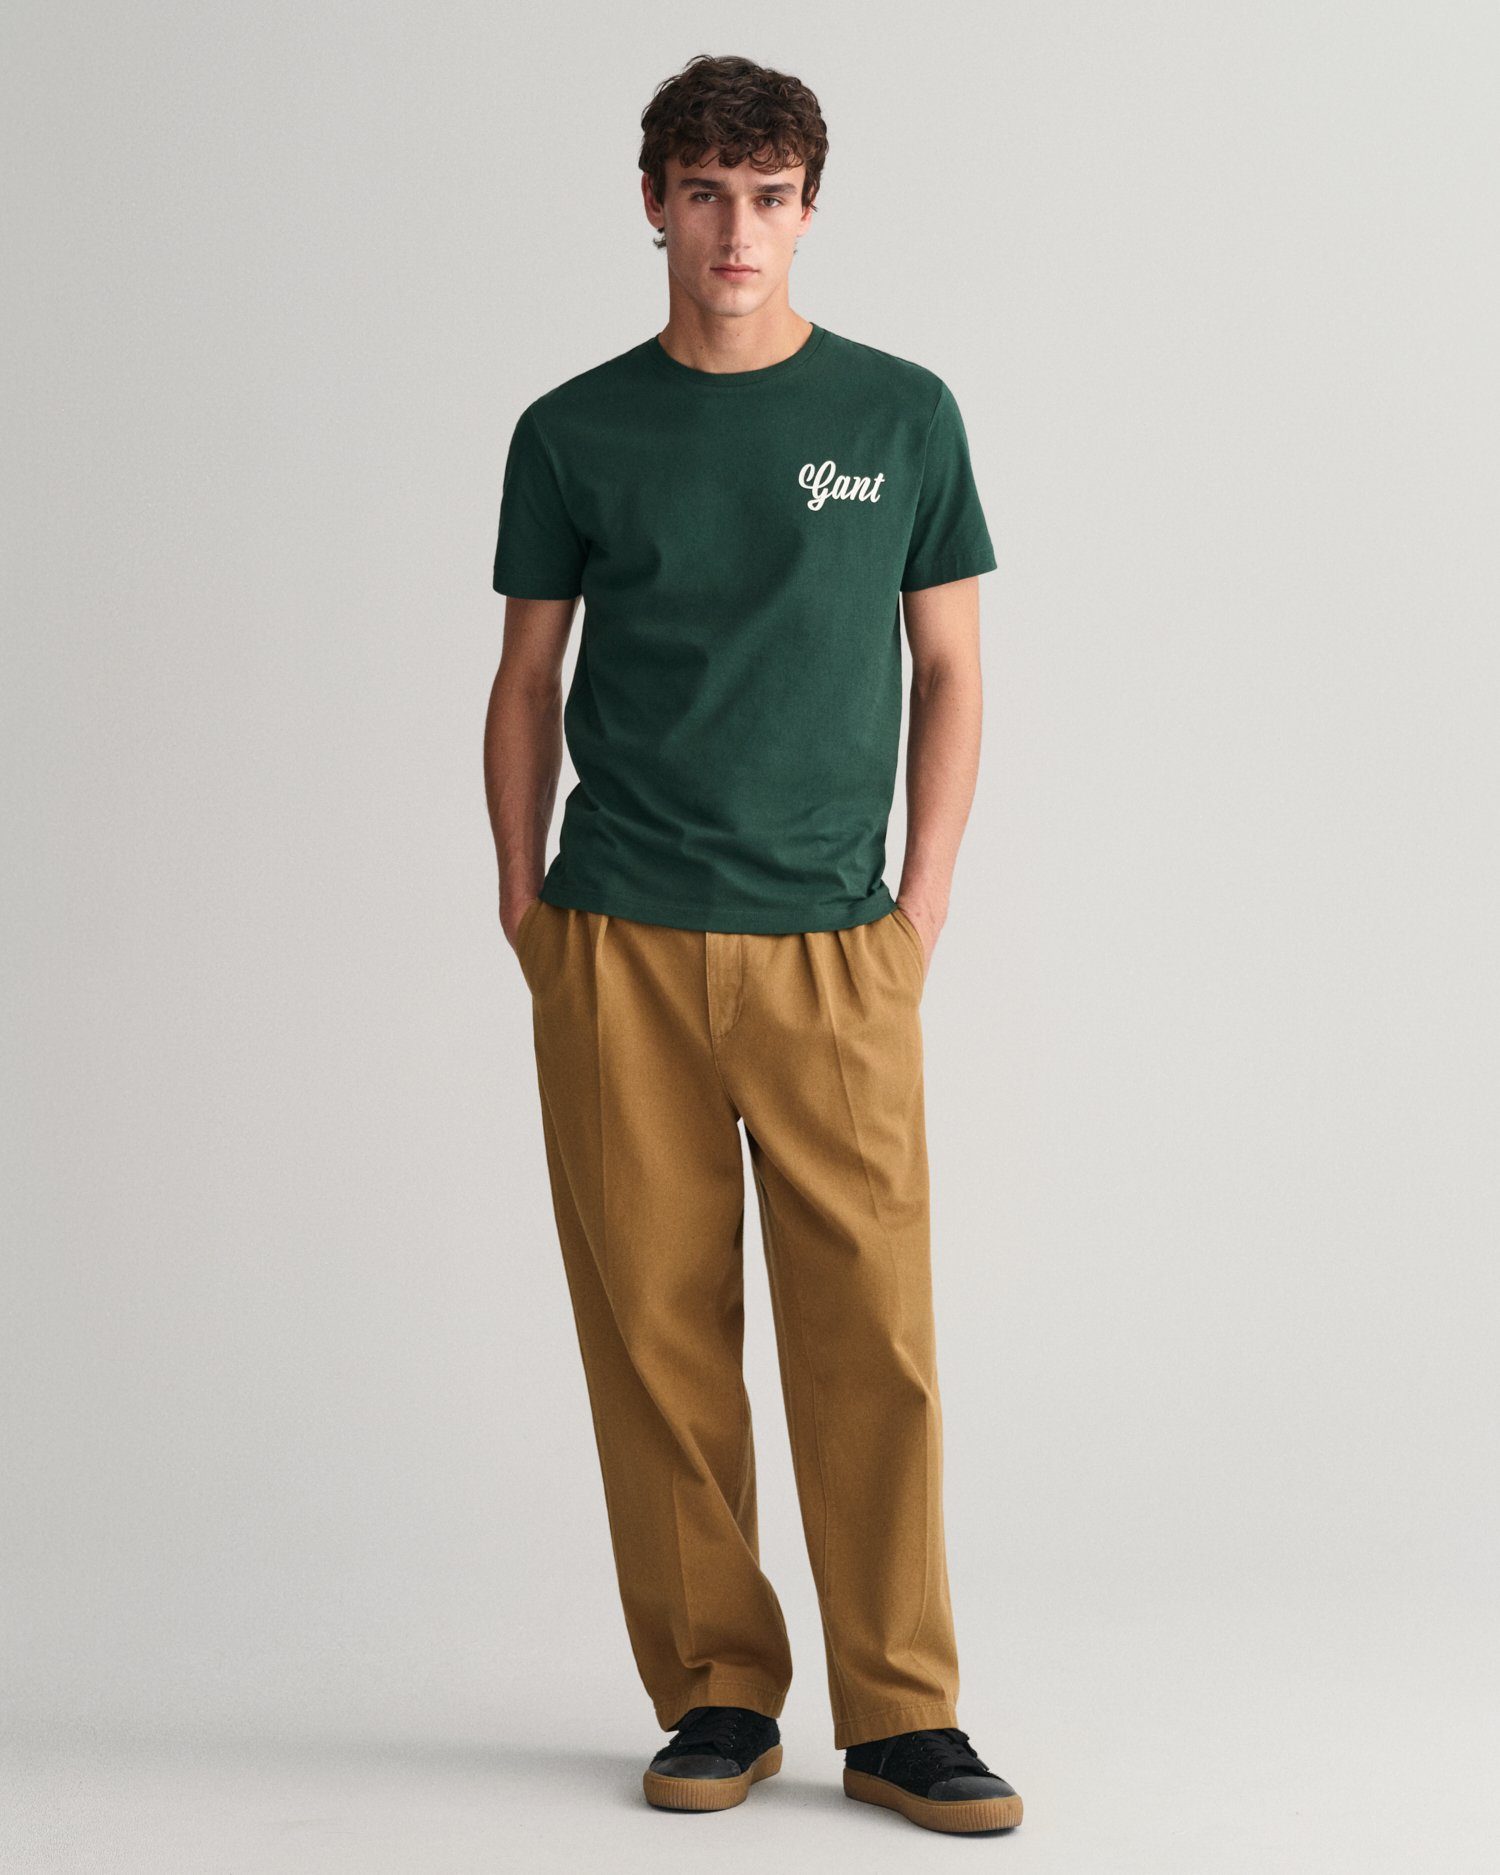 T-SHIRT REG GRAPHIC GREEN T-Shirt SS SMALL Gant TARTAN